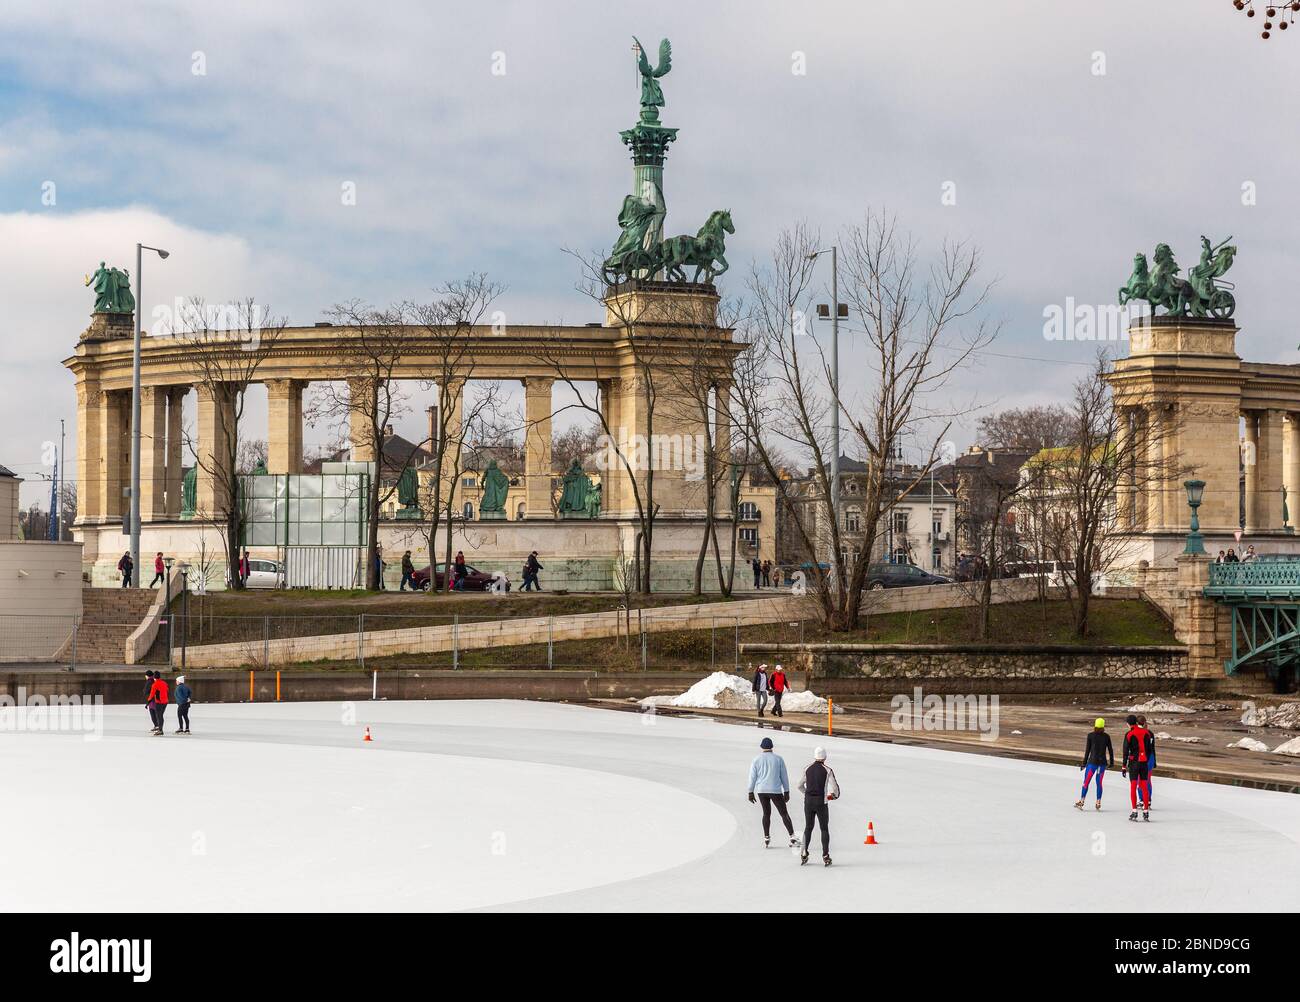 Budapest, Ungarn - 14. Februar 2016: Heldenplatz - Hauptplatz in Budapest. Eisbahn im Stadtpark von Budapest. Menschen Skaten, Sportler trainieren Stockfoto